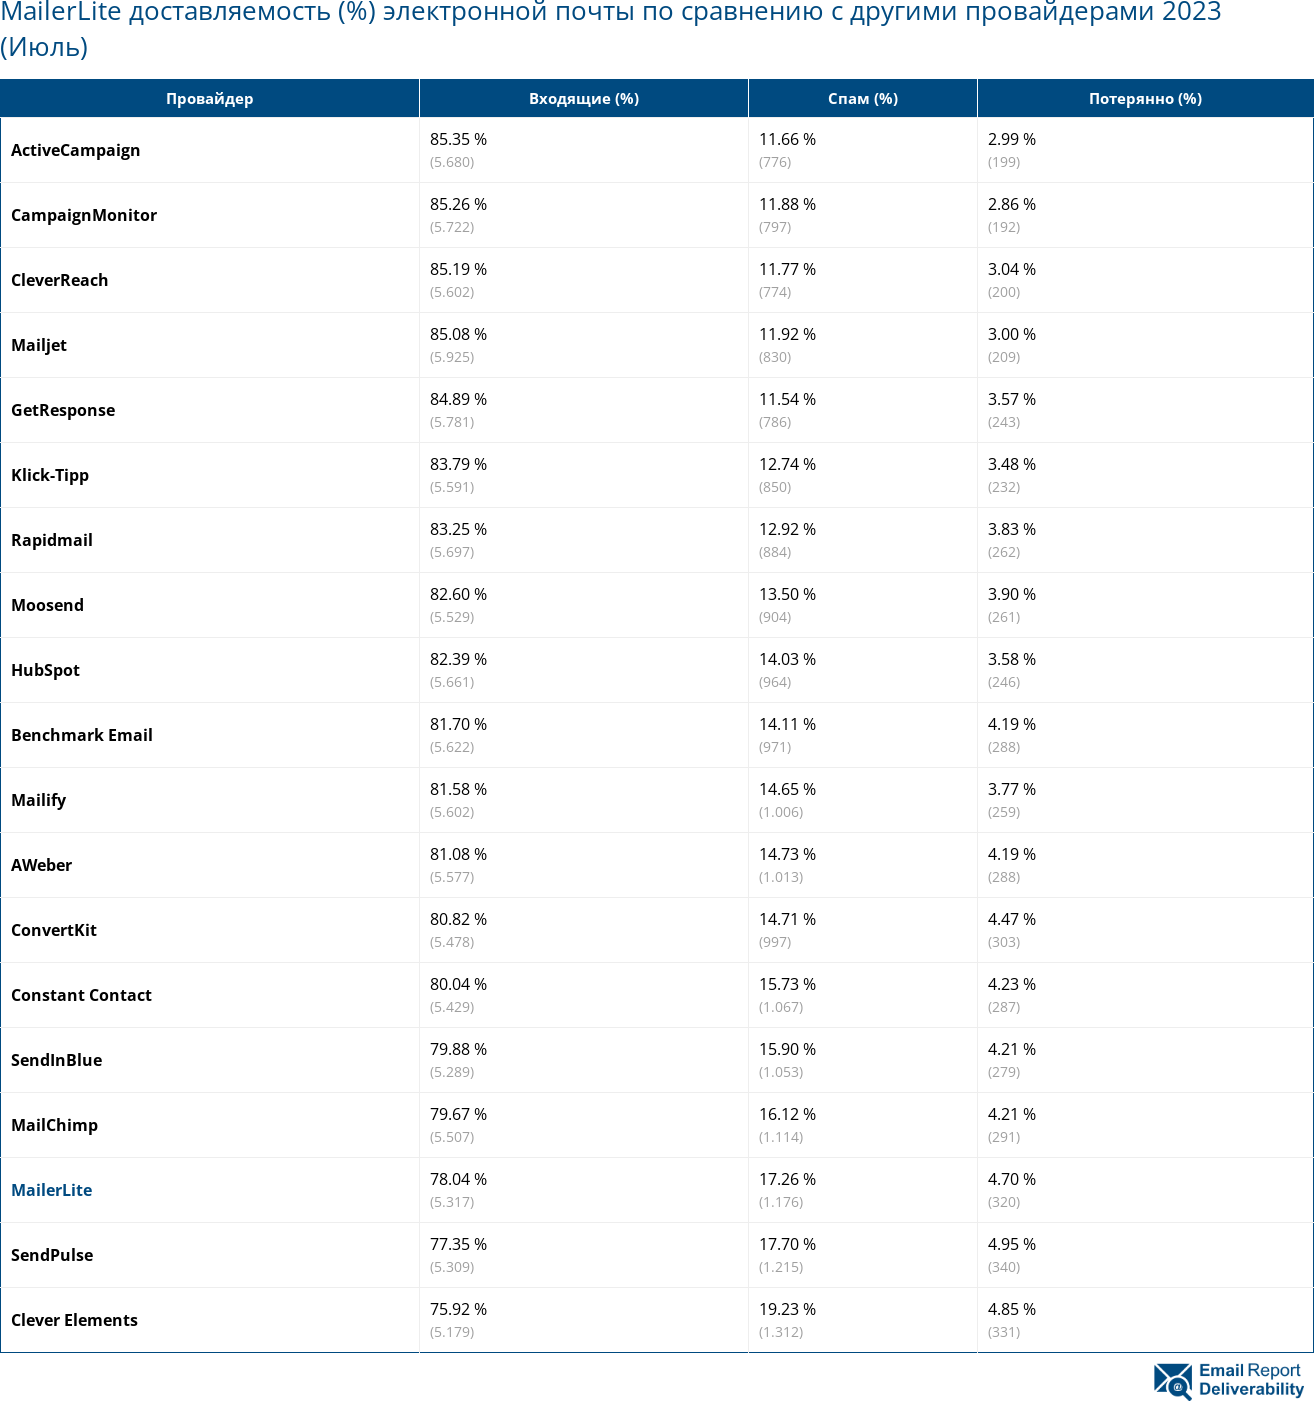 MailerLite доставляемость (%) электронной почты по сравнению с другими провайдерами 2023 (Июль)